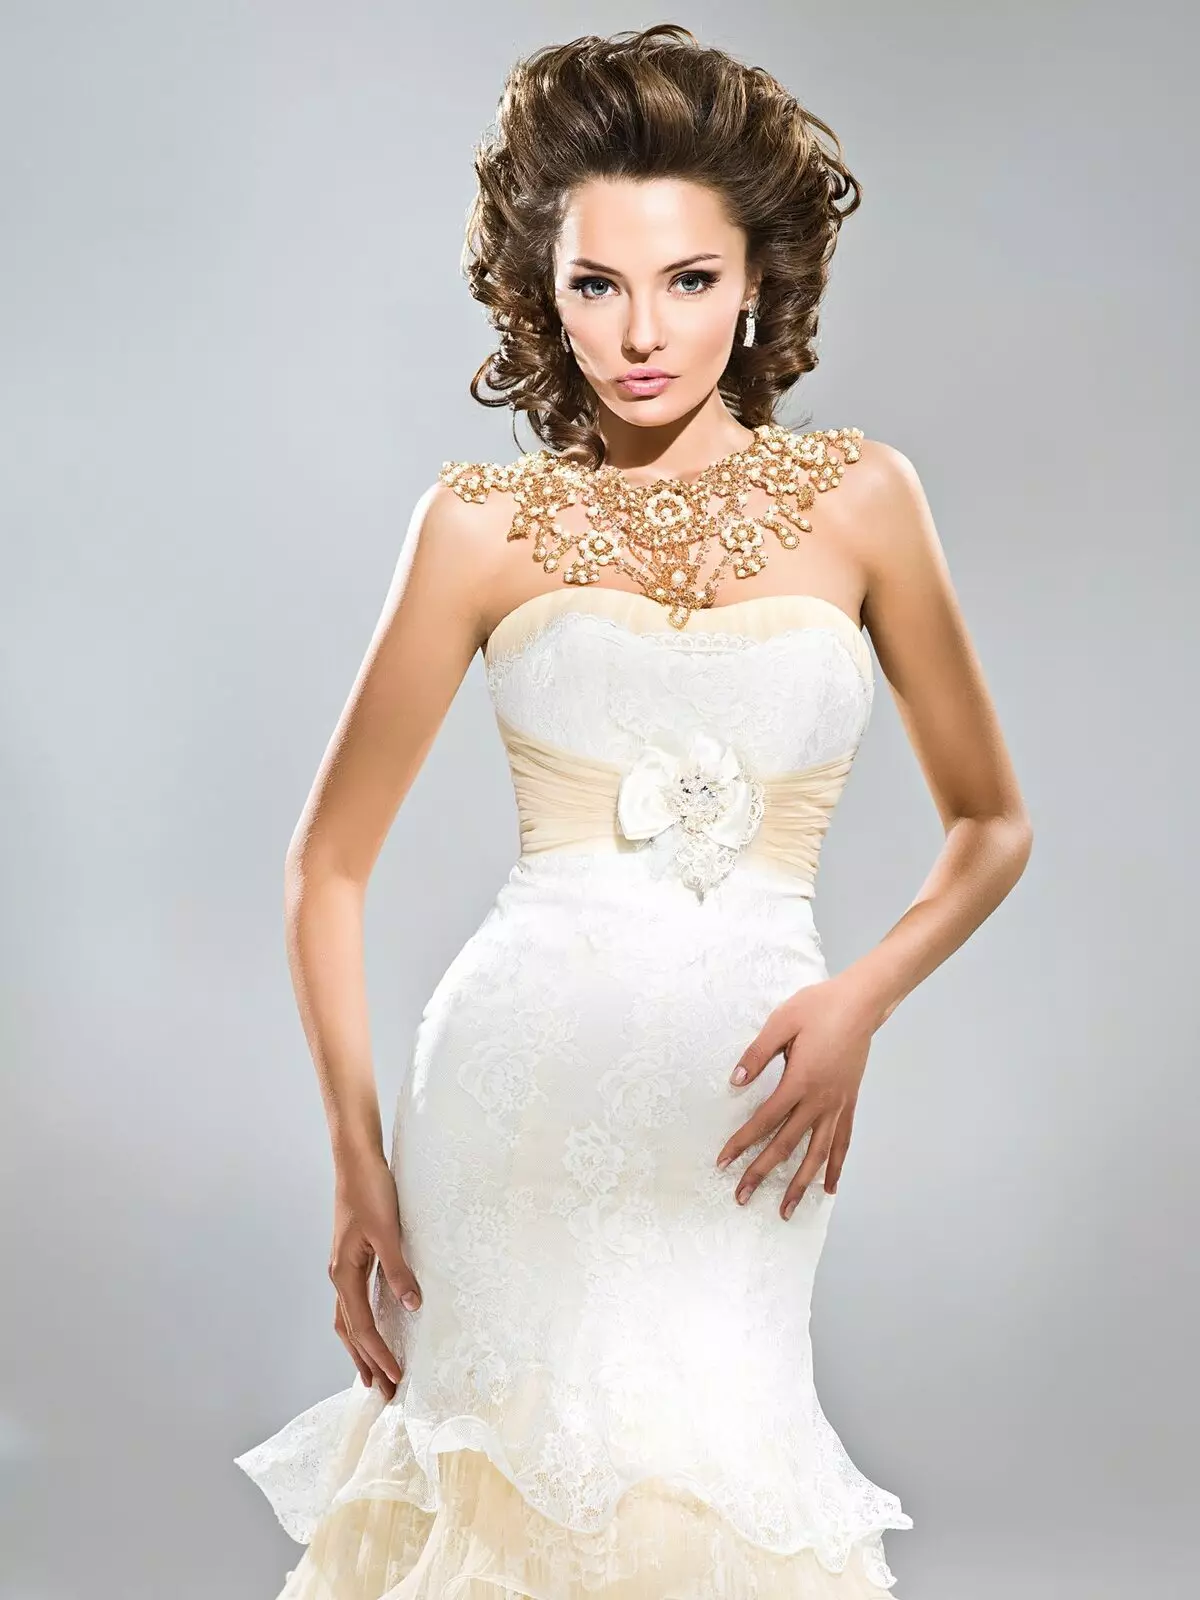 Bogdan Anna Wedding Dress